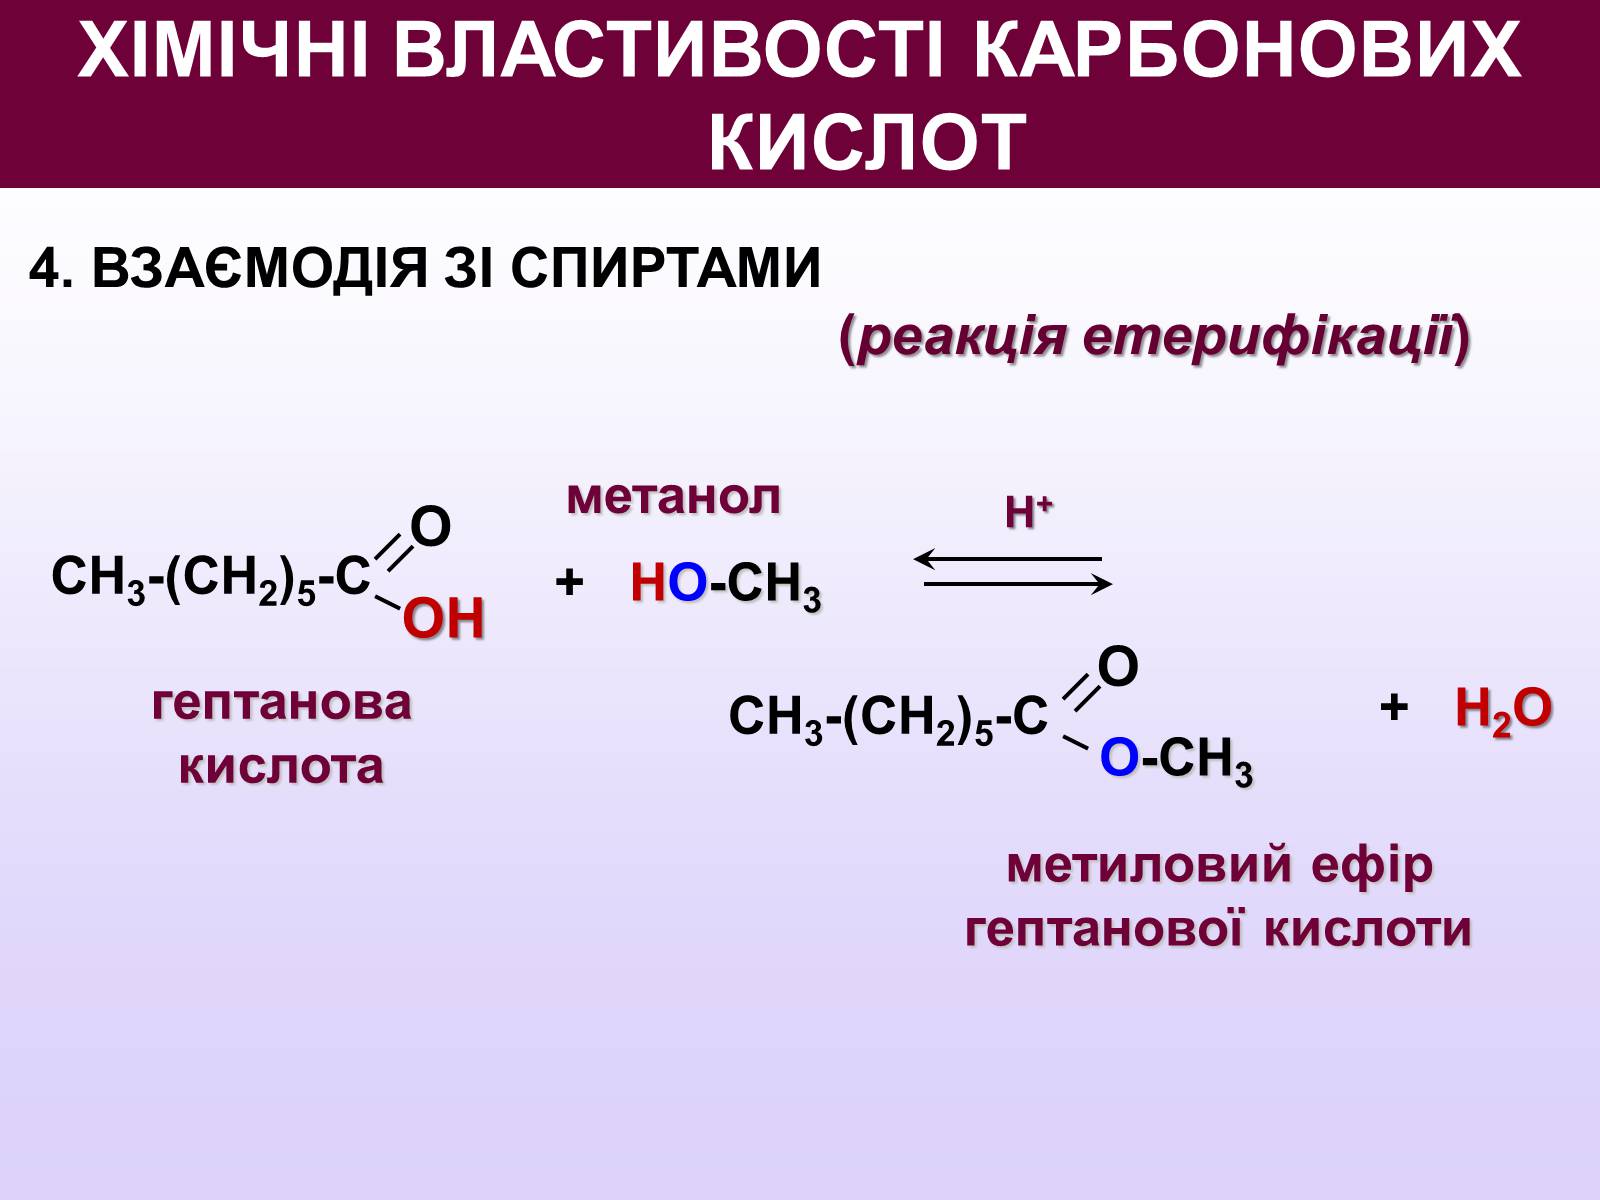 Метанол метанол простой эфир. Метанол кислота. Щавелевая кислота метанол. Карбоновая кислота и метанол.